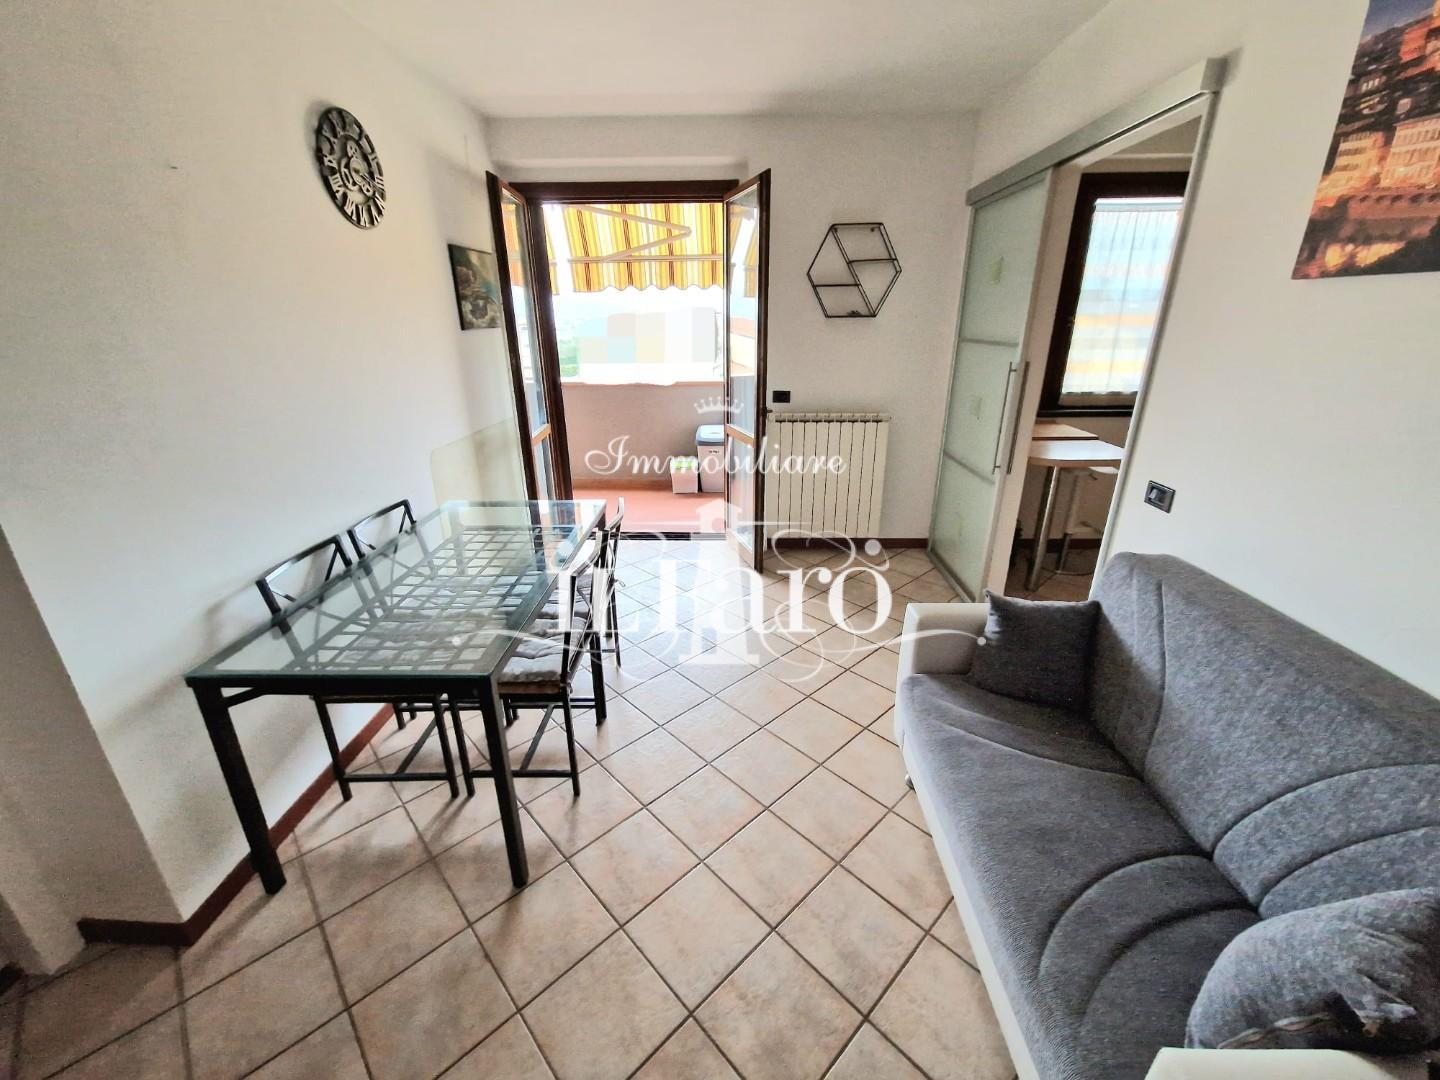 Appartamento in vendita a Signa, 3 locali, prezzo € 210.000 | PortaleAgenzieImmobiliari.it